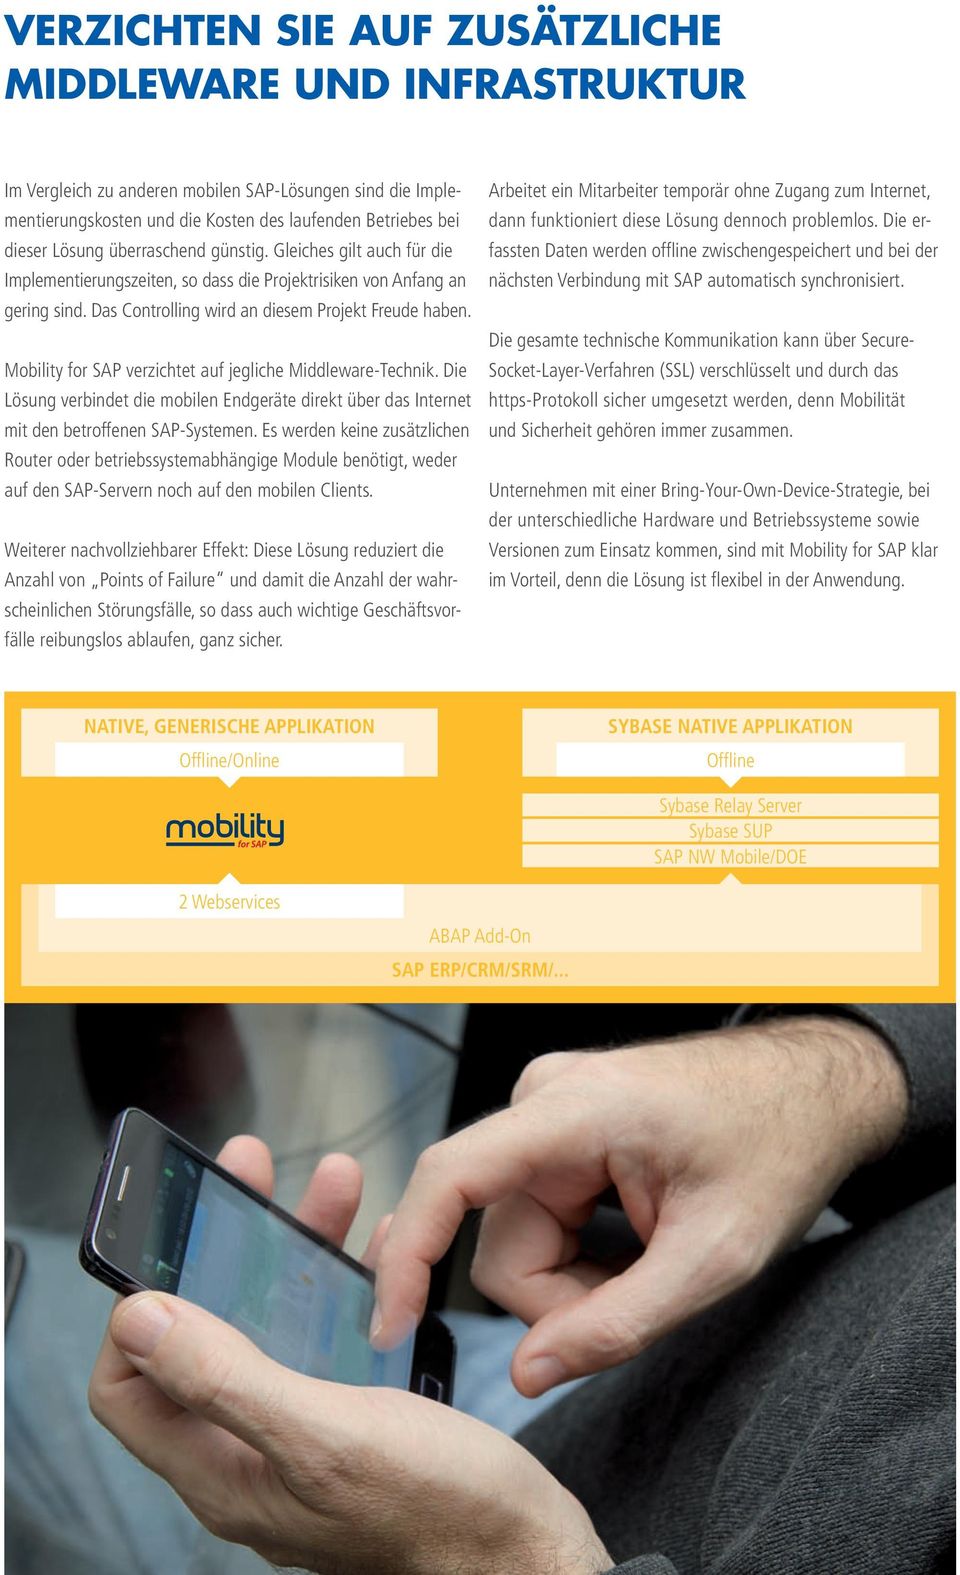 Mobility for SAP verzichtet auf jegliche Middleware-Technik. Die Lösung verbindet die mobilen Endgeräte direkt über das Internet mit den betroffenen SAP-Systemen.